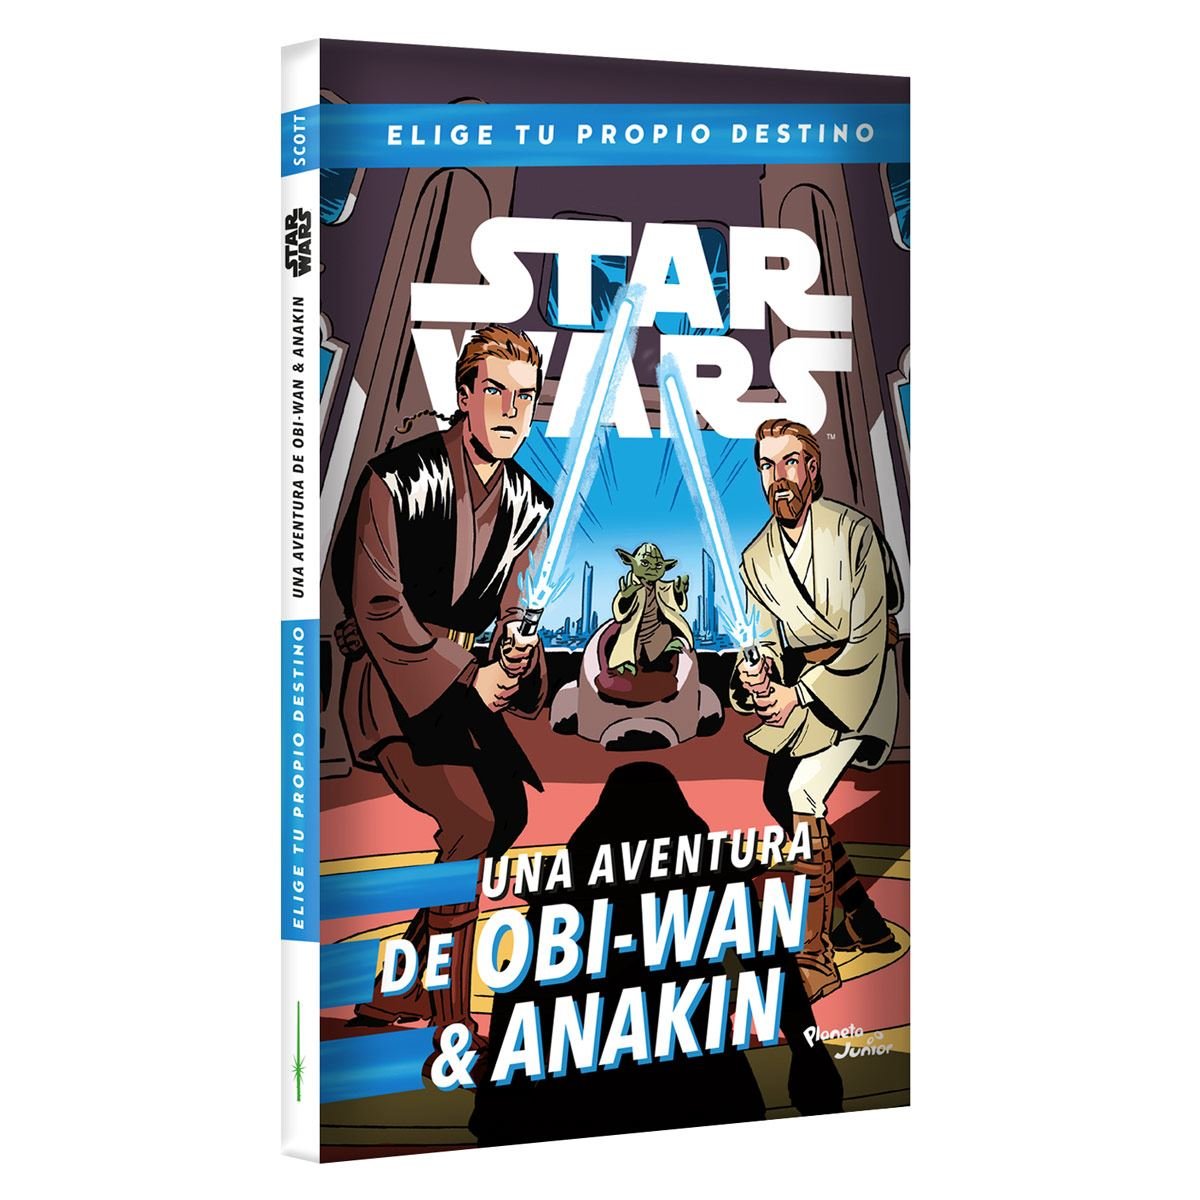 Star Wars. Una aventura de Obi-Wan & Anakin. Elige tu propio destino